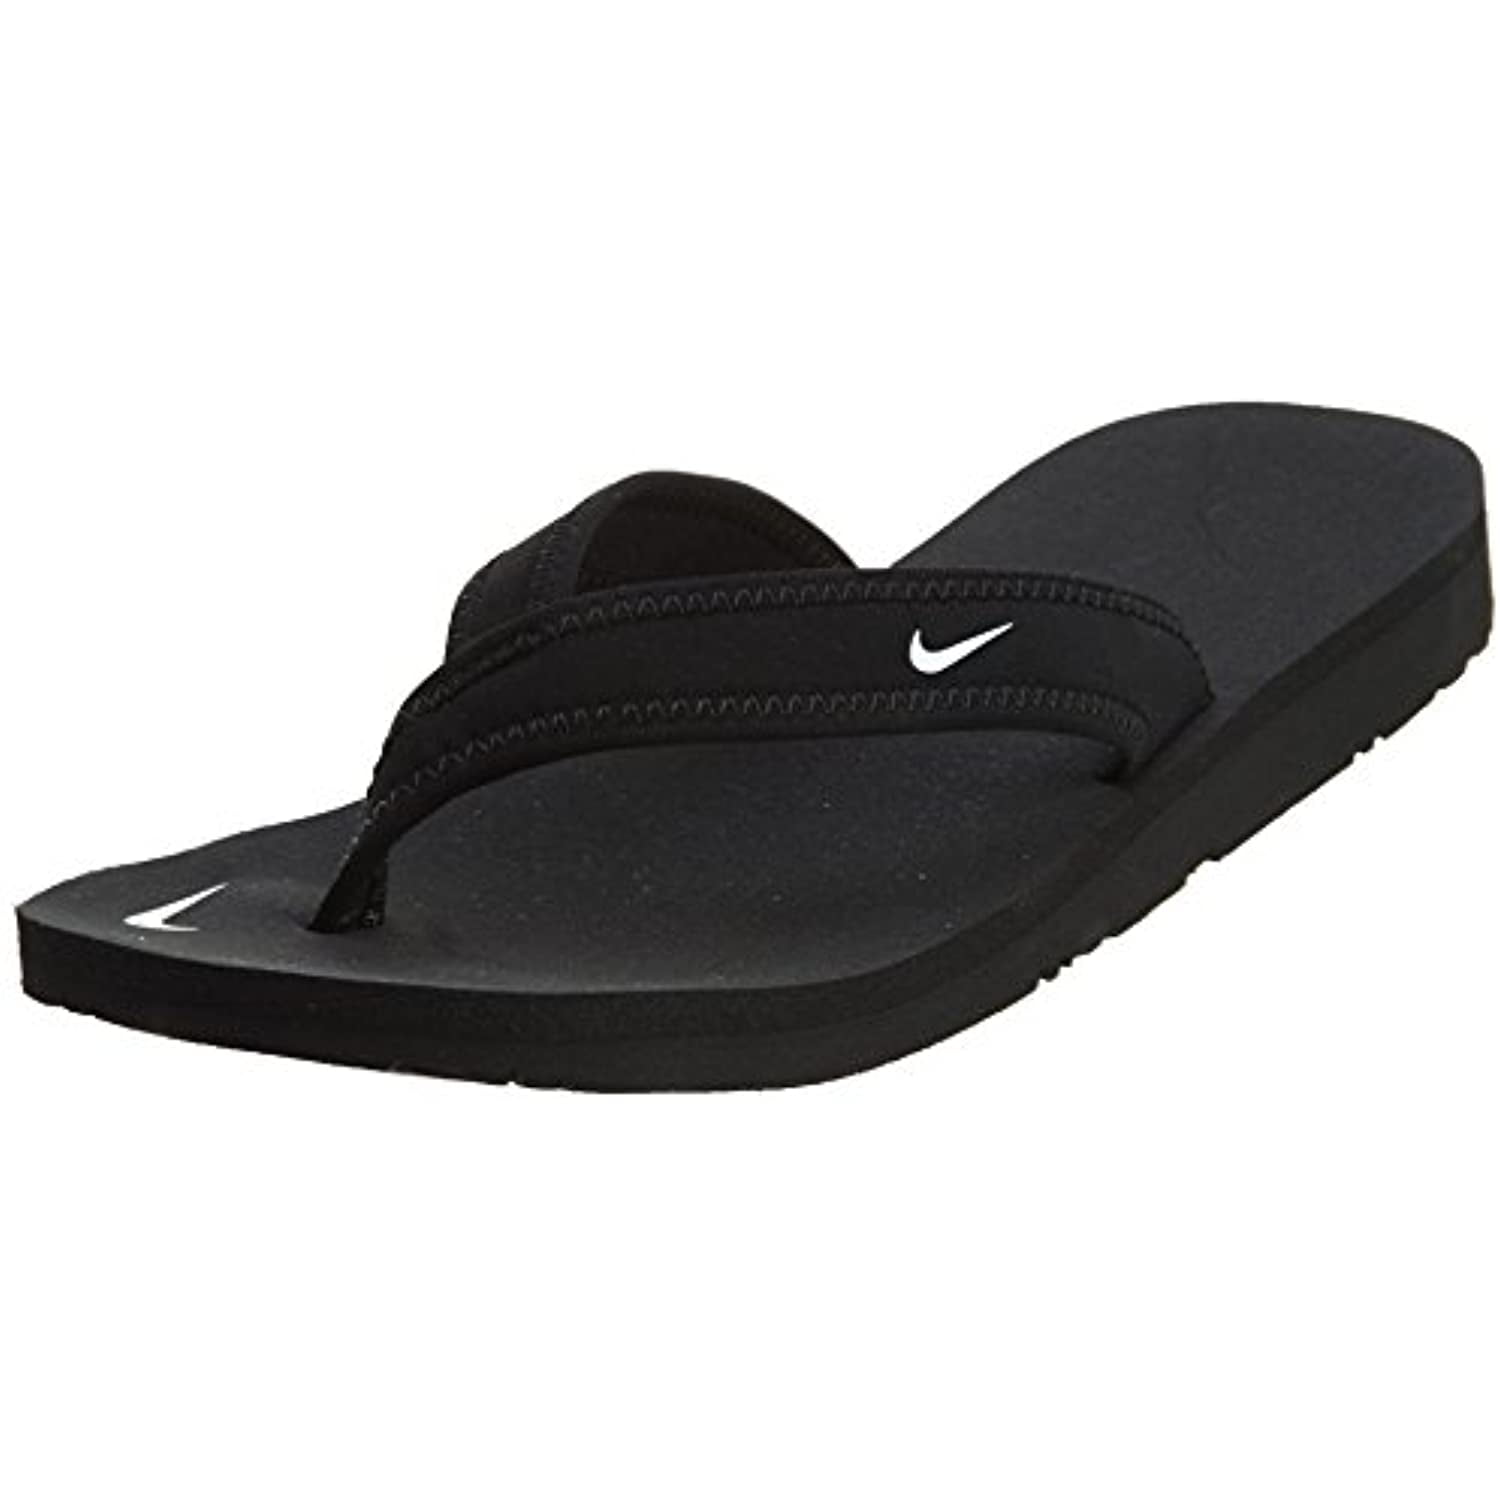 Nike Womens Celso Thong Sandal 314870-011 Size 10 Black/White - Walmart ...